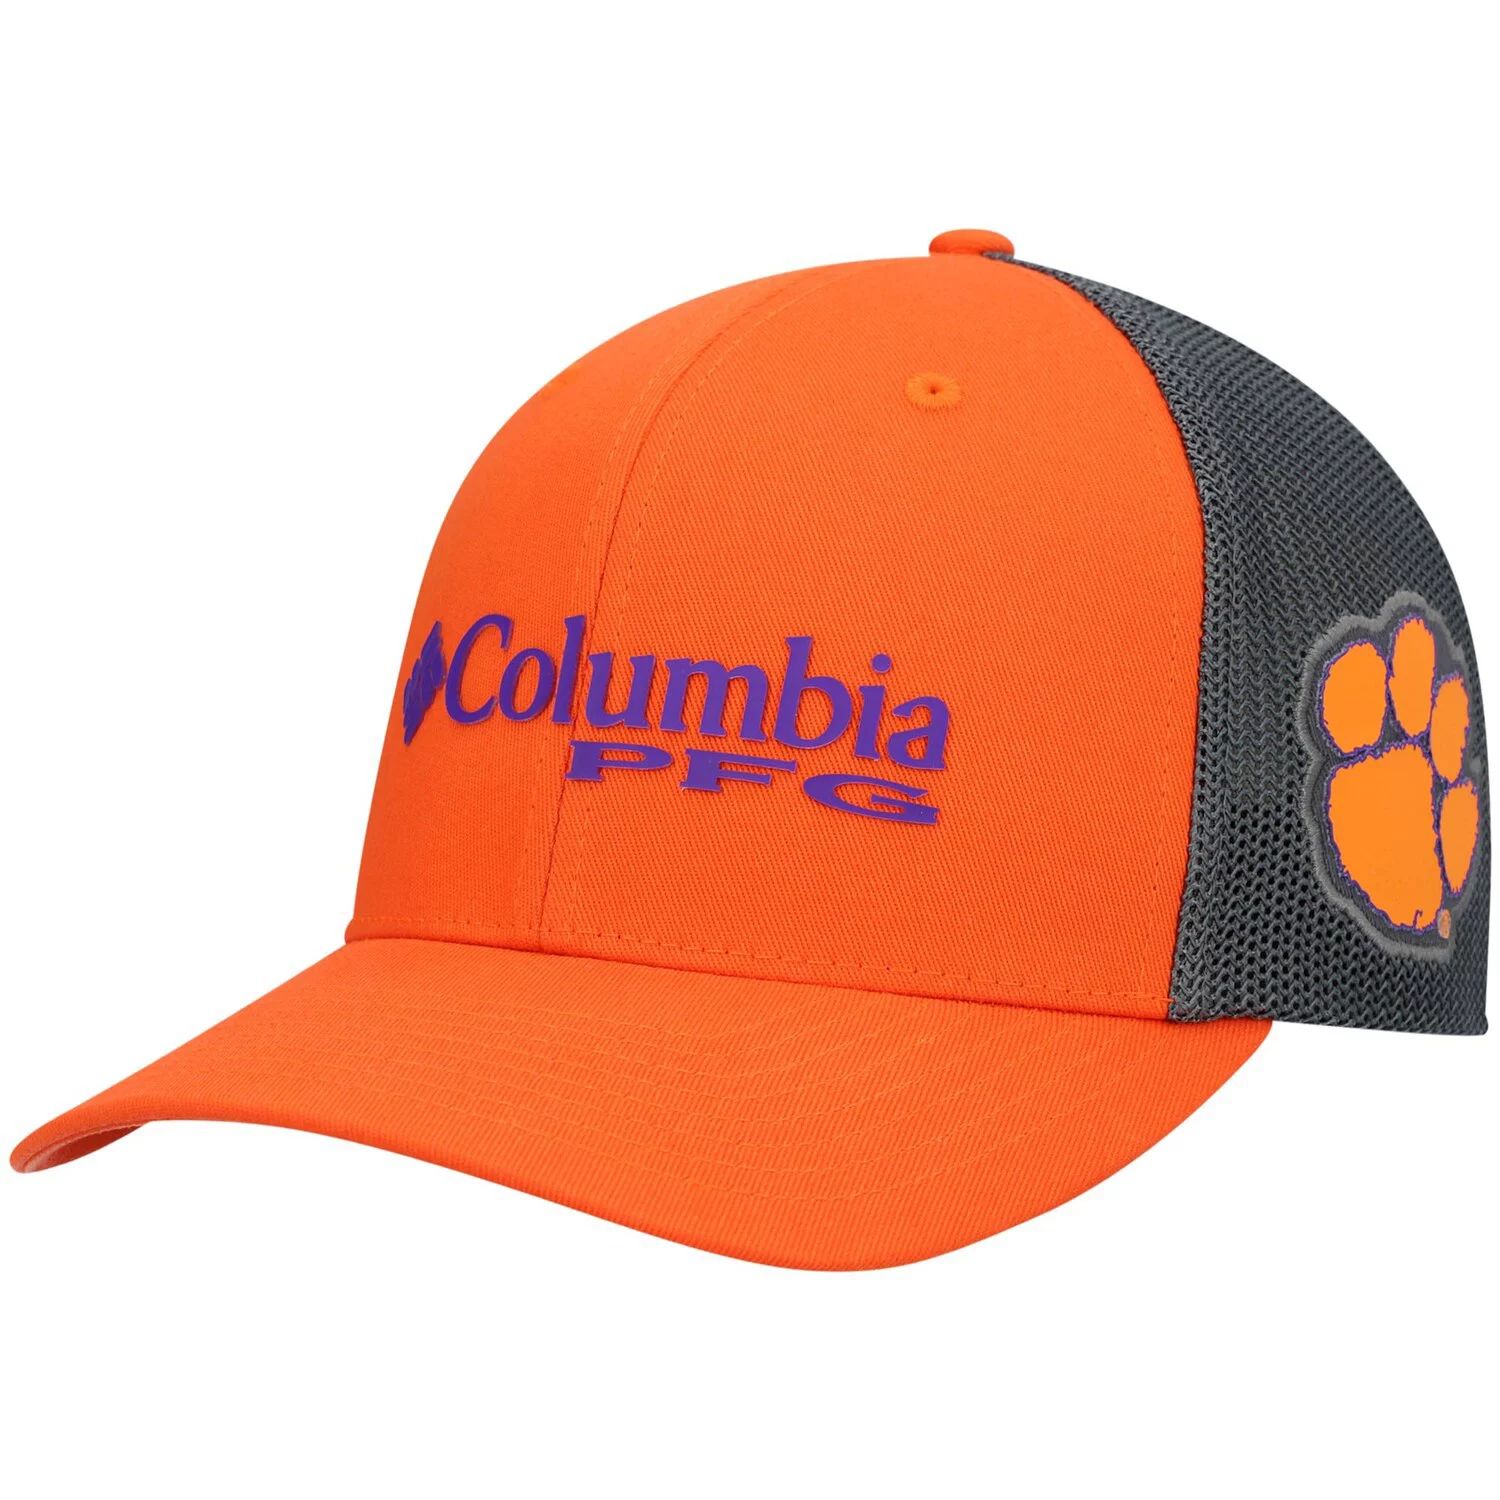 Мужская кепка Columbia оранжево-серая Clemson Tigers PFG Snapback